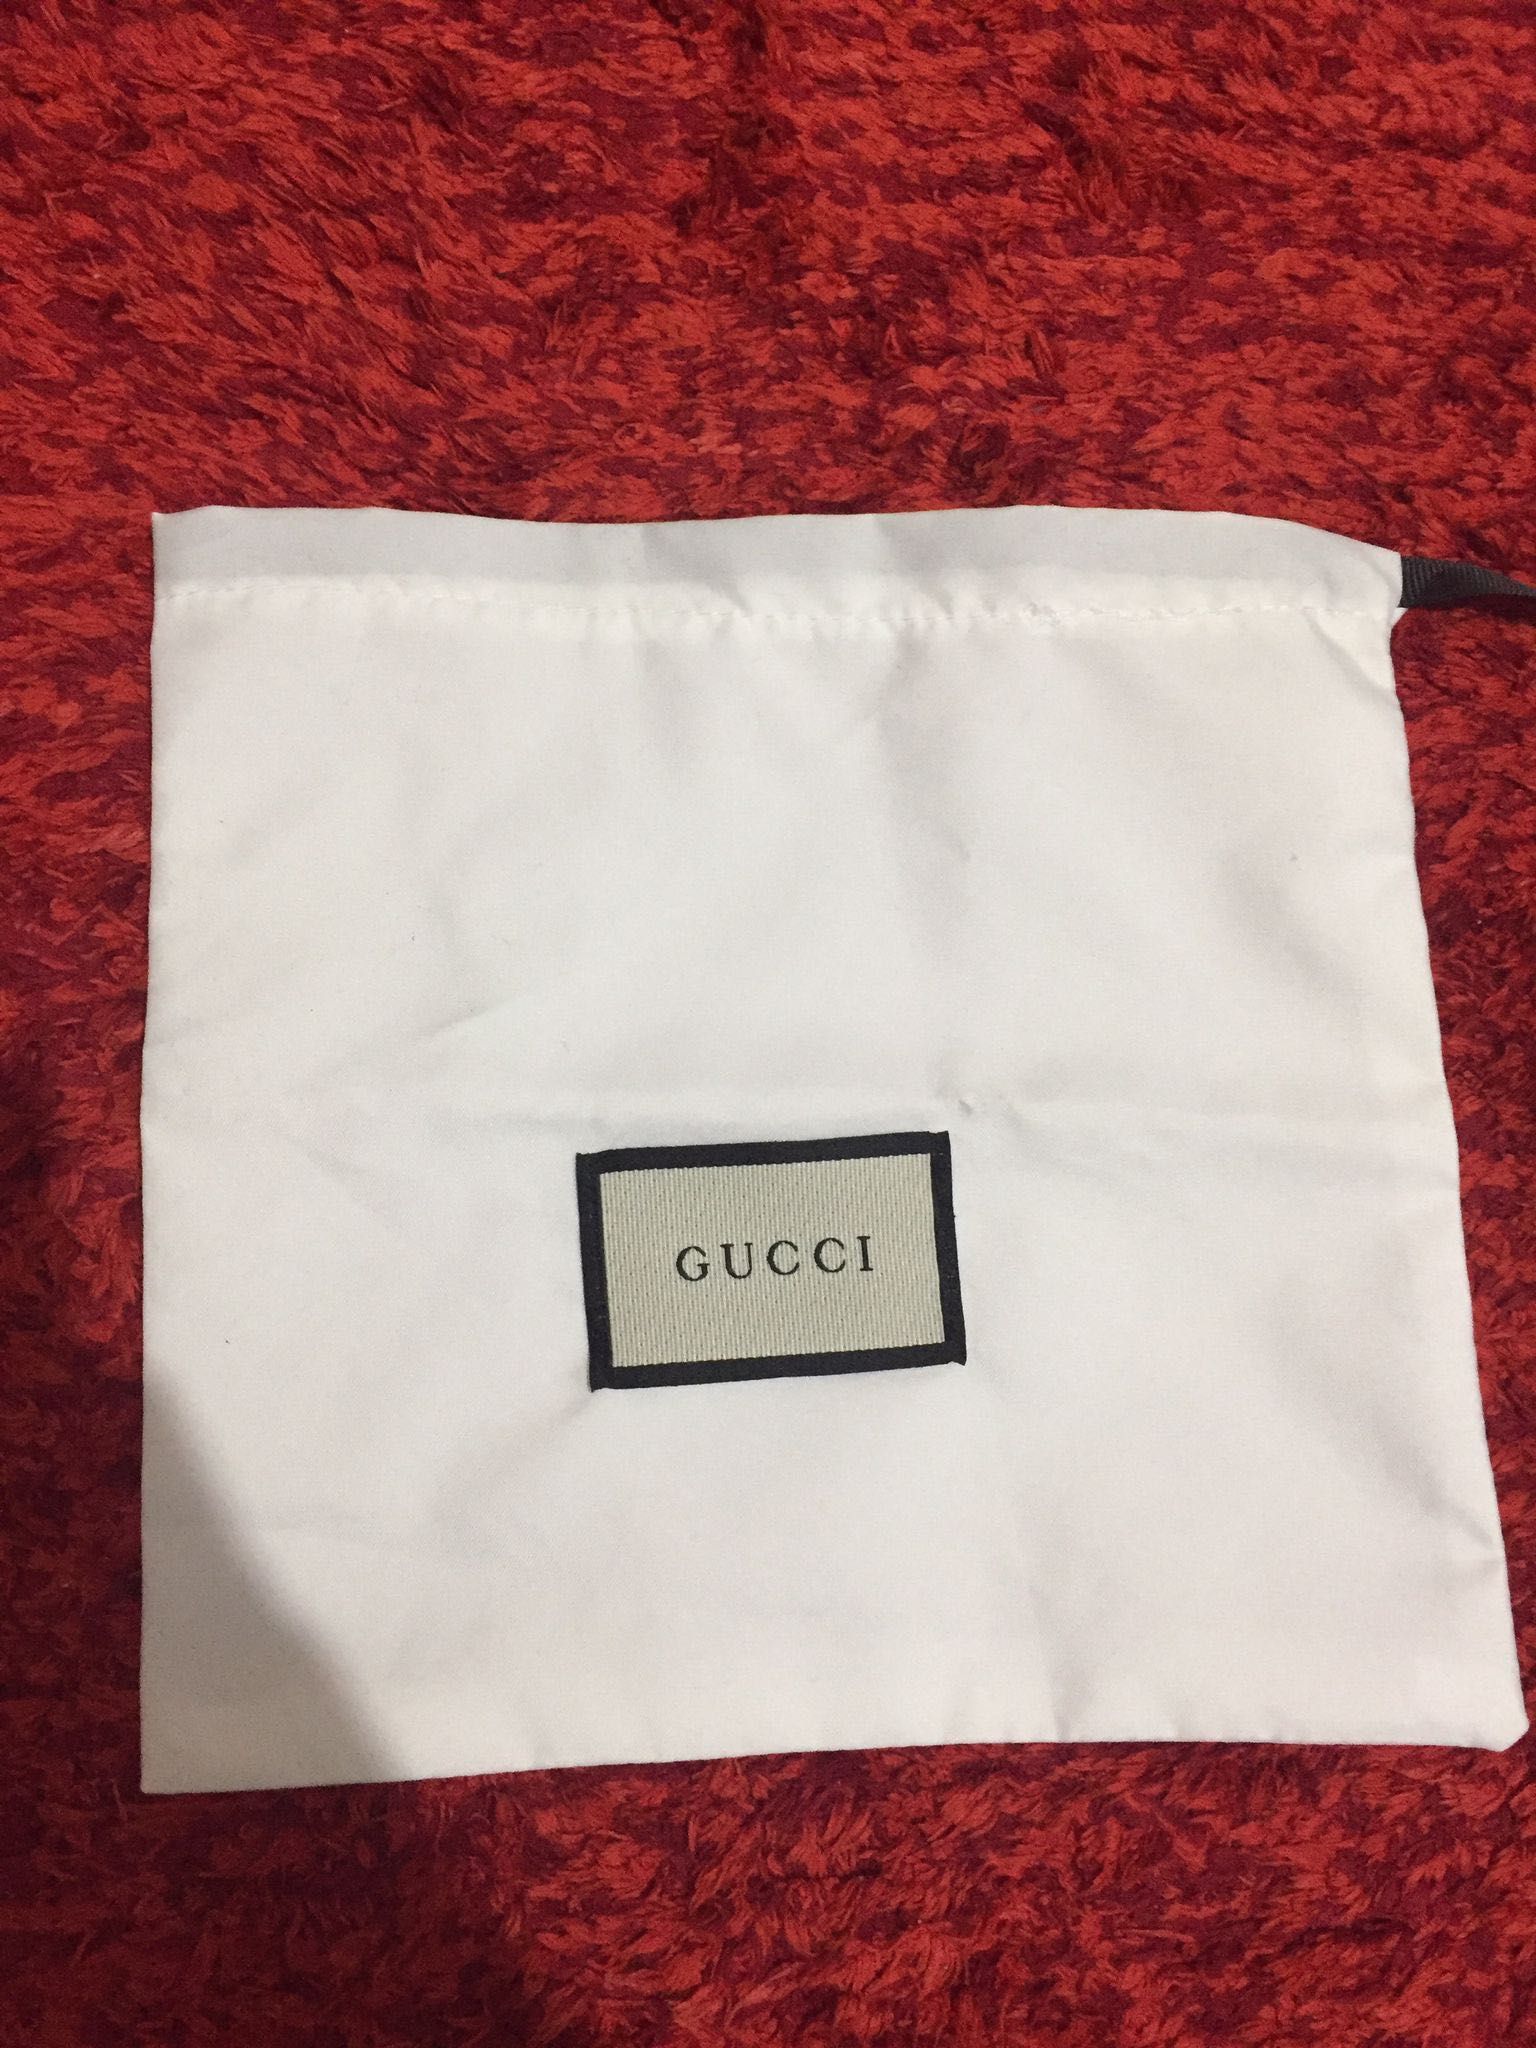 Saculet Gucci dust bag